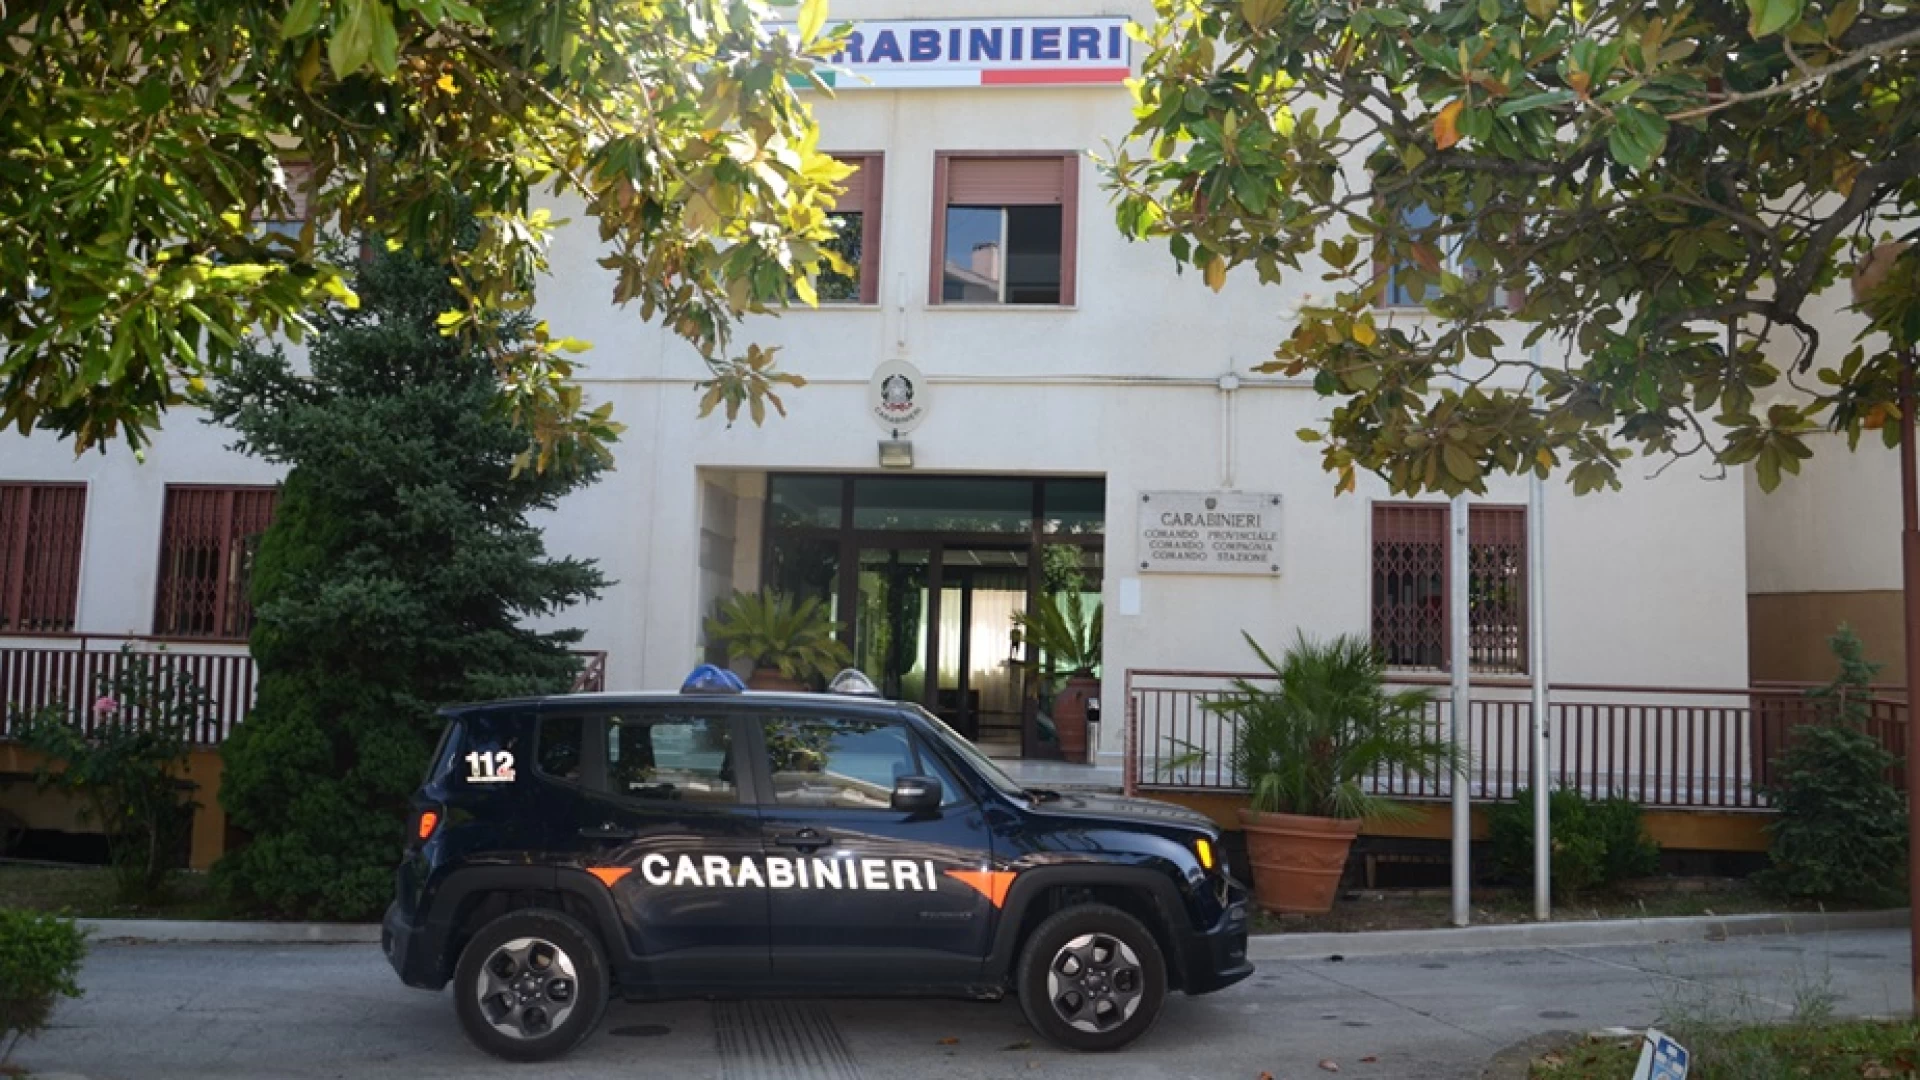 Isernia: lotta allo spaccio di droga, i Carabinieri arrestano un cittadino extracomunitario.